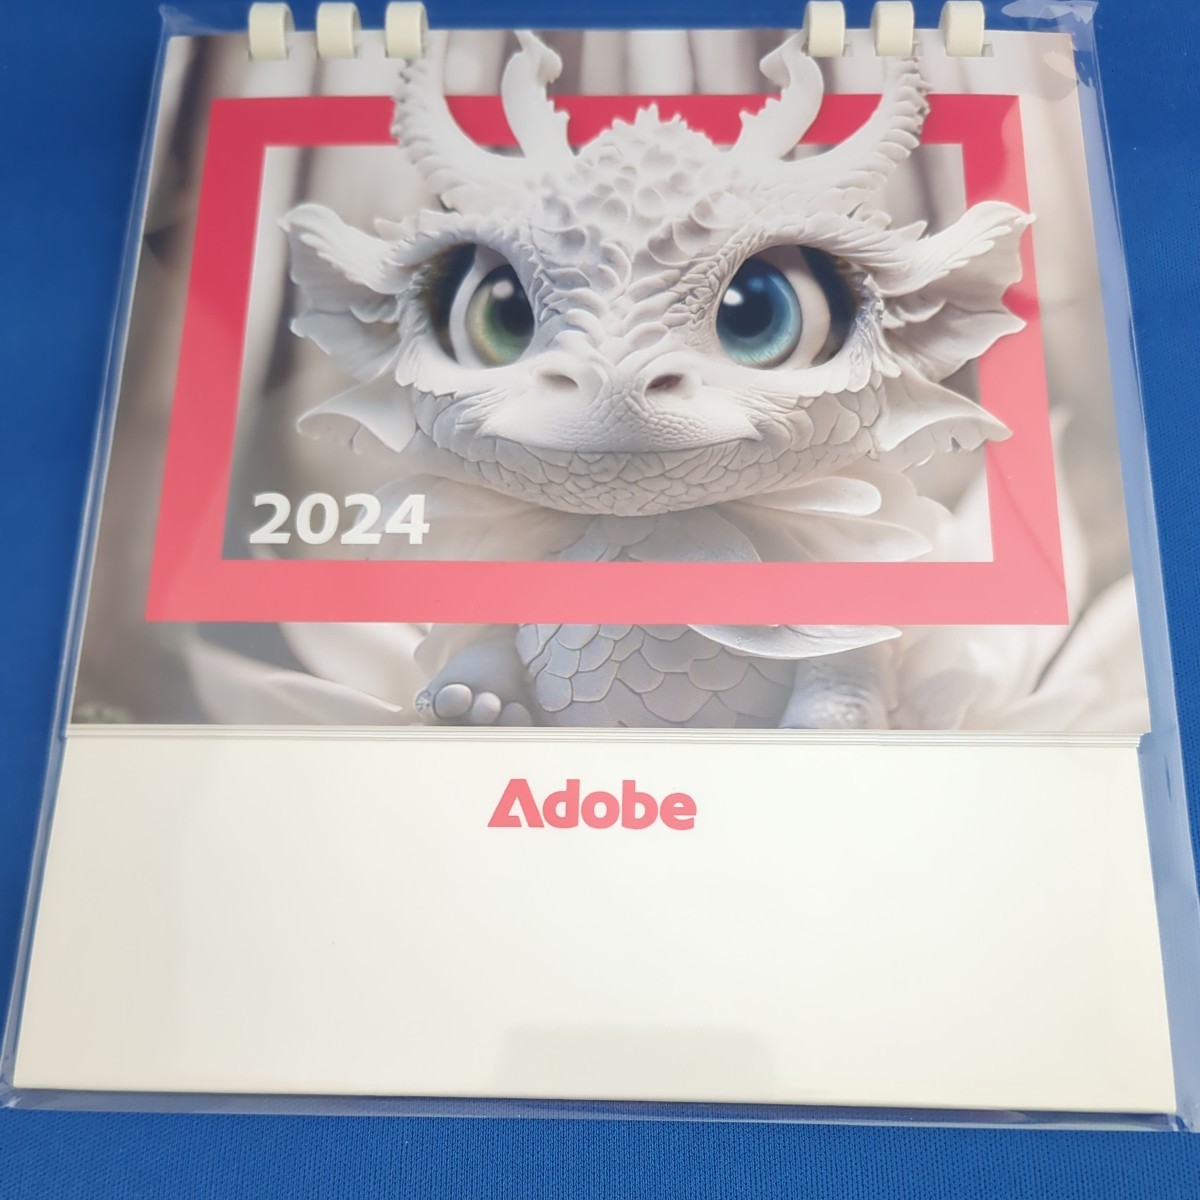 【送料無料】2024年度・Adobe卓上カレンダー_Adobeの2024年度の卓上カレンダーです。